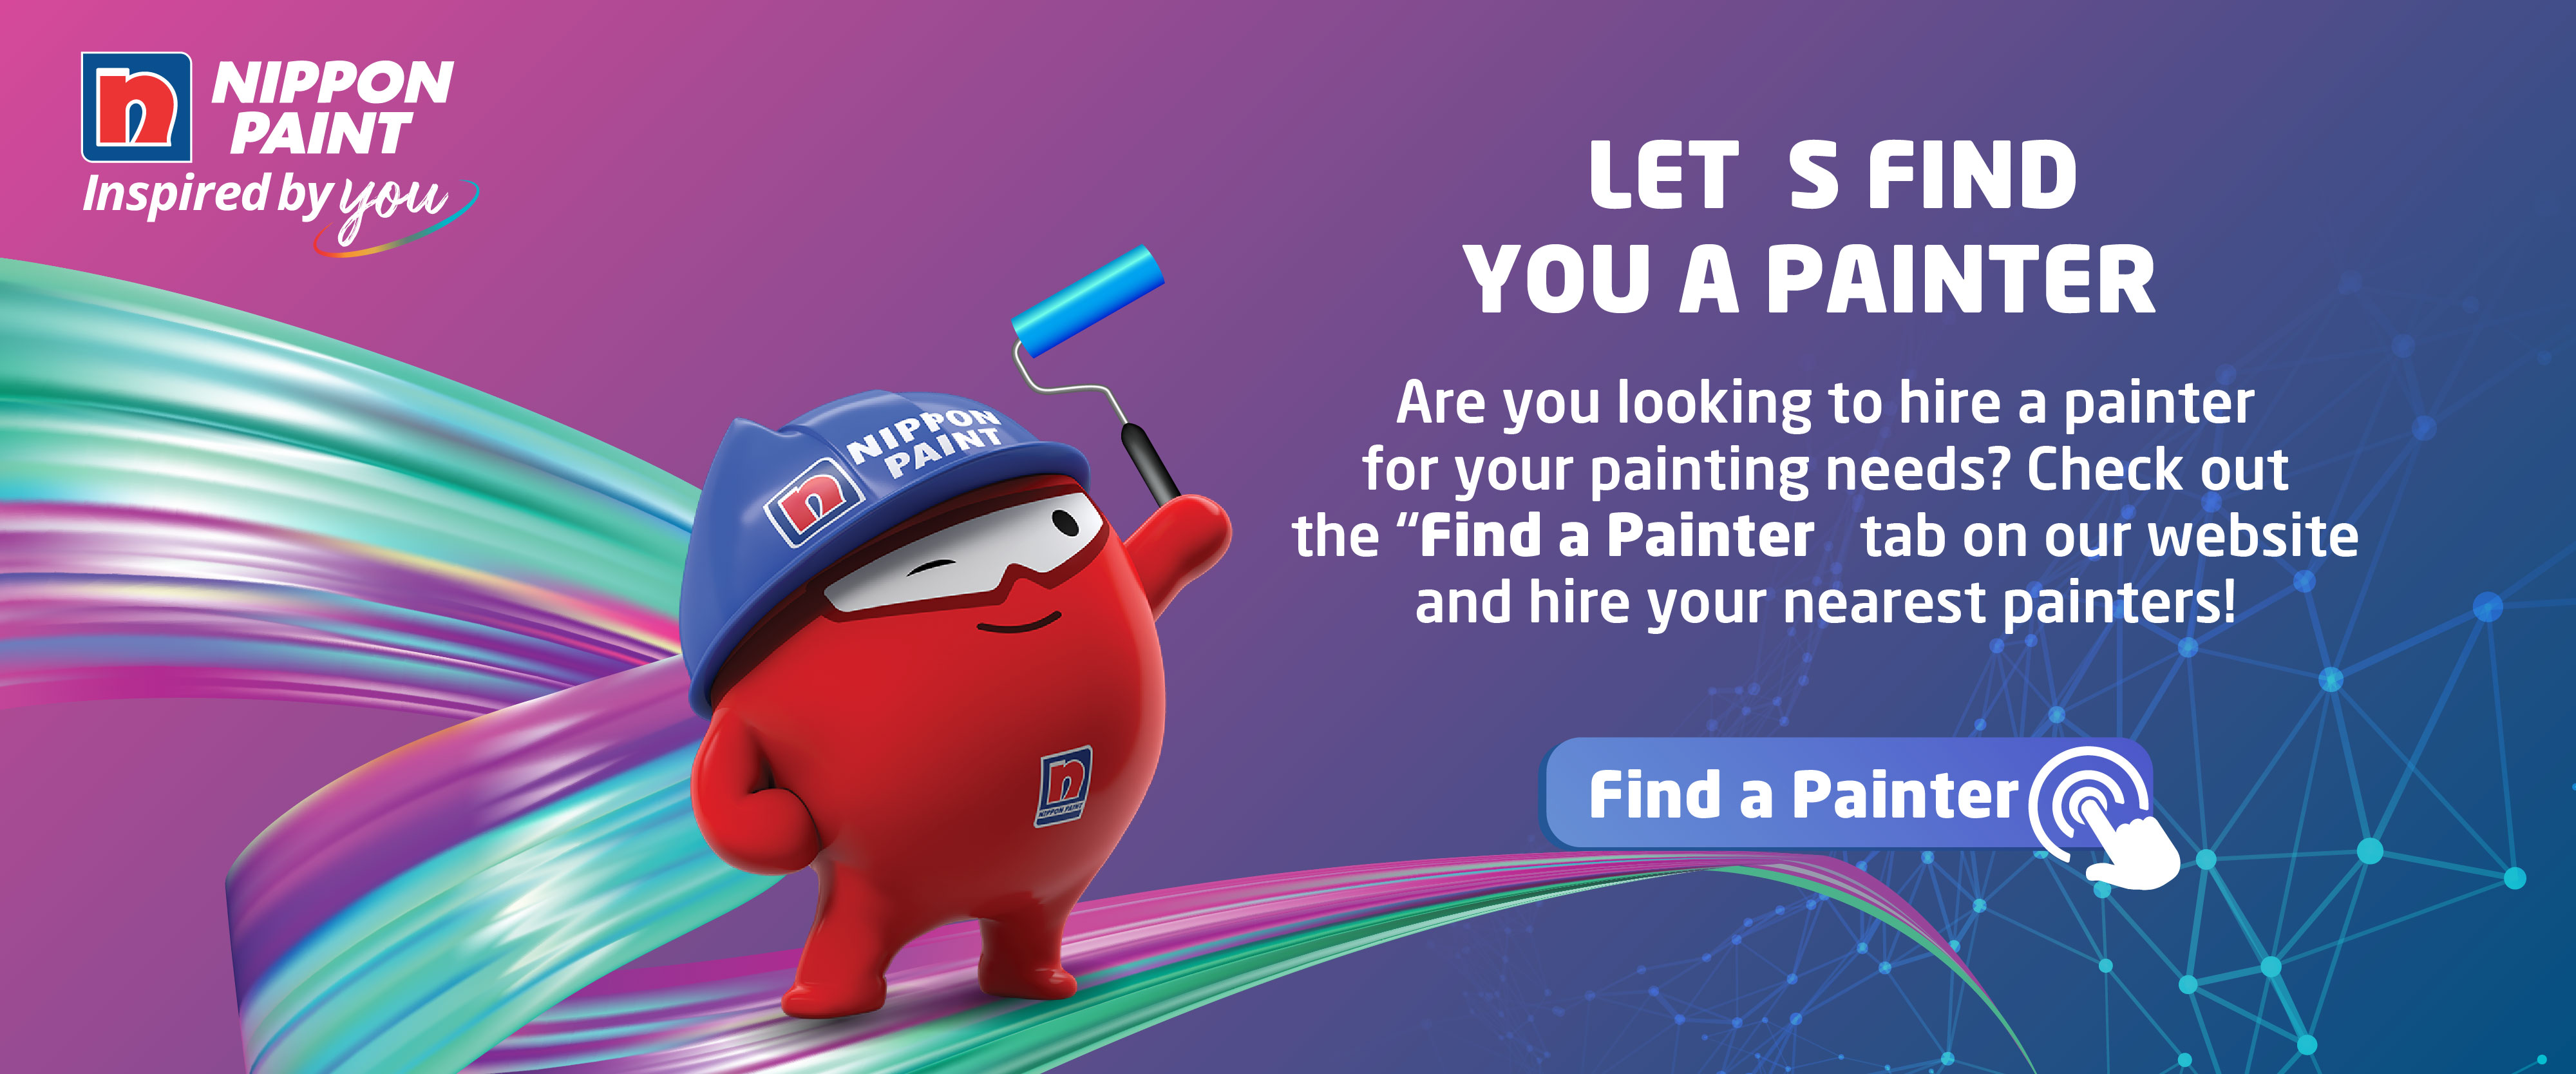 Painter service web banner